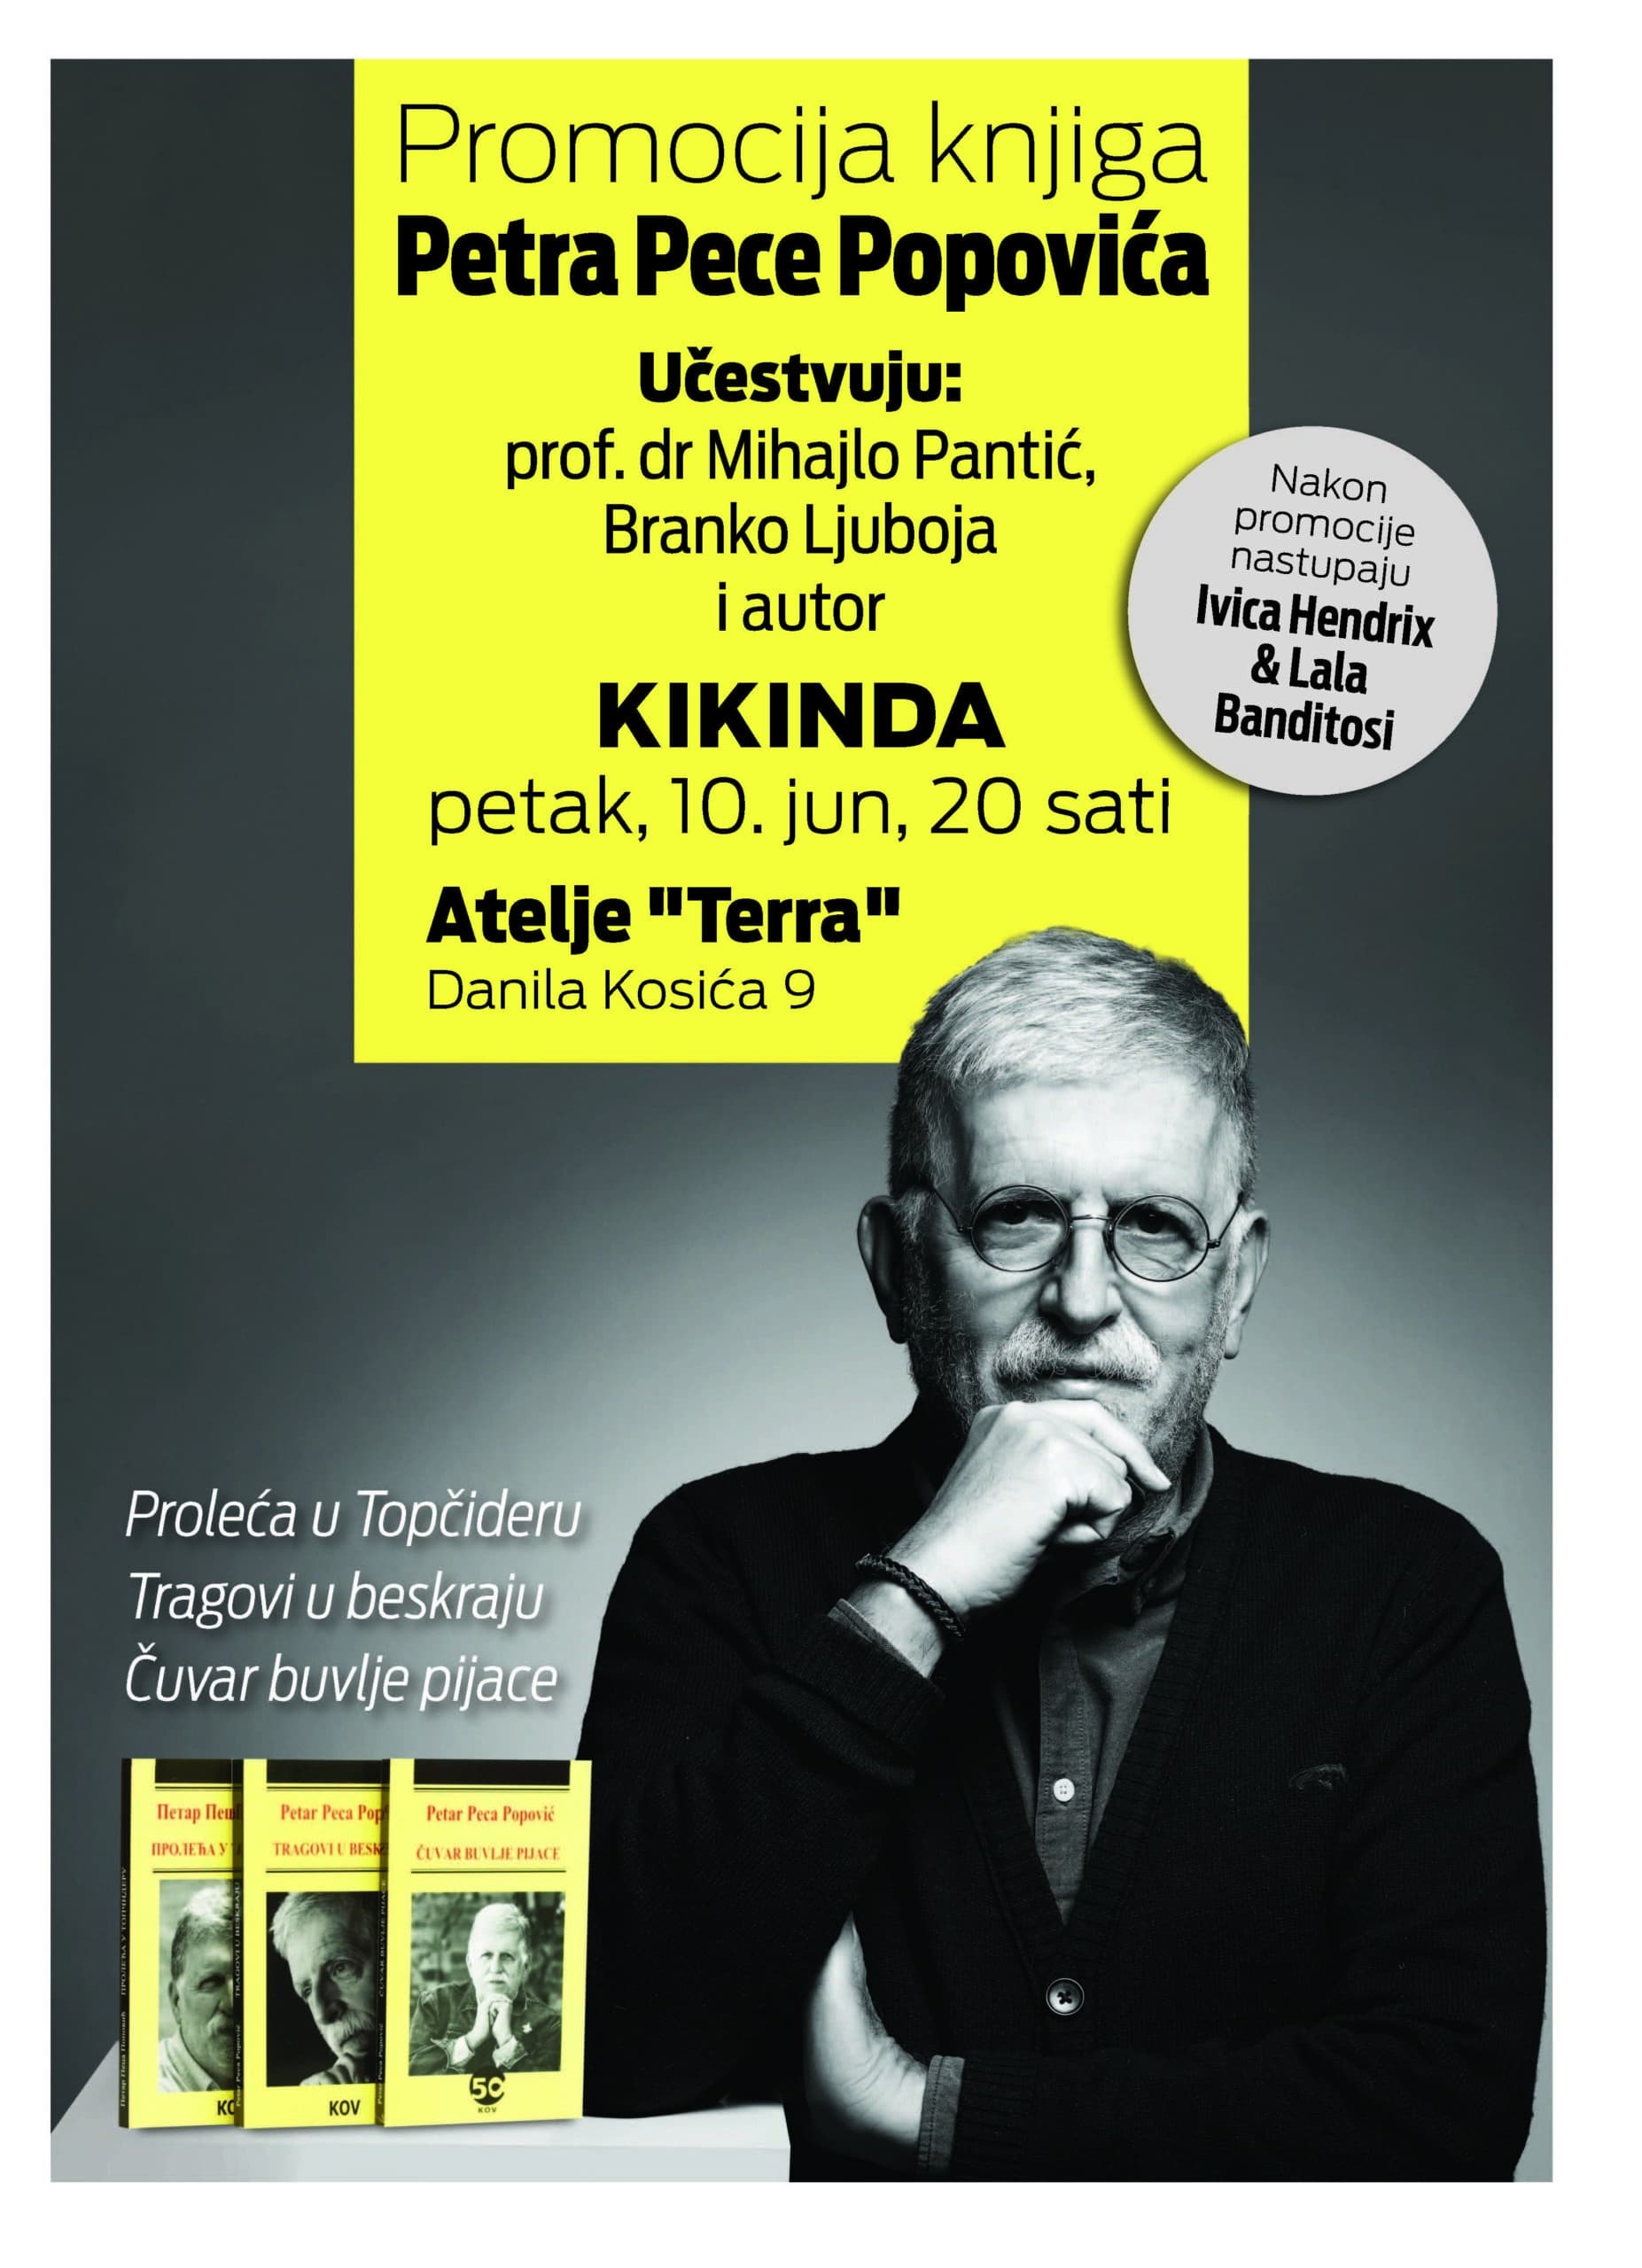 Promocija knjiga Pece Popovića u petak uveče u Kikindi 2